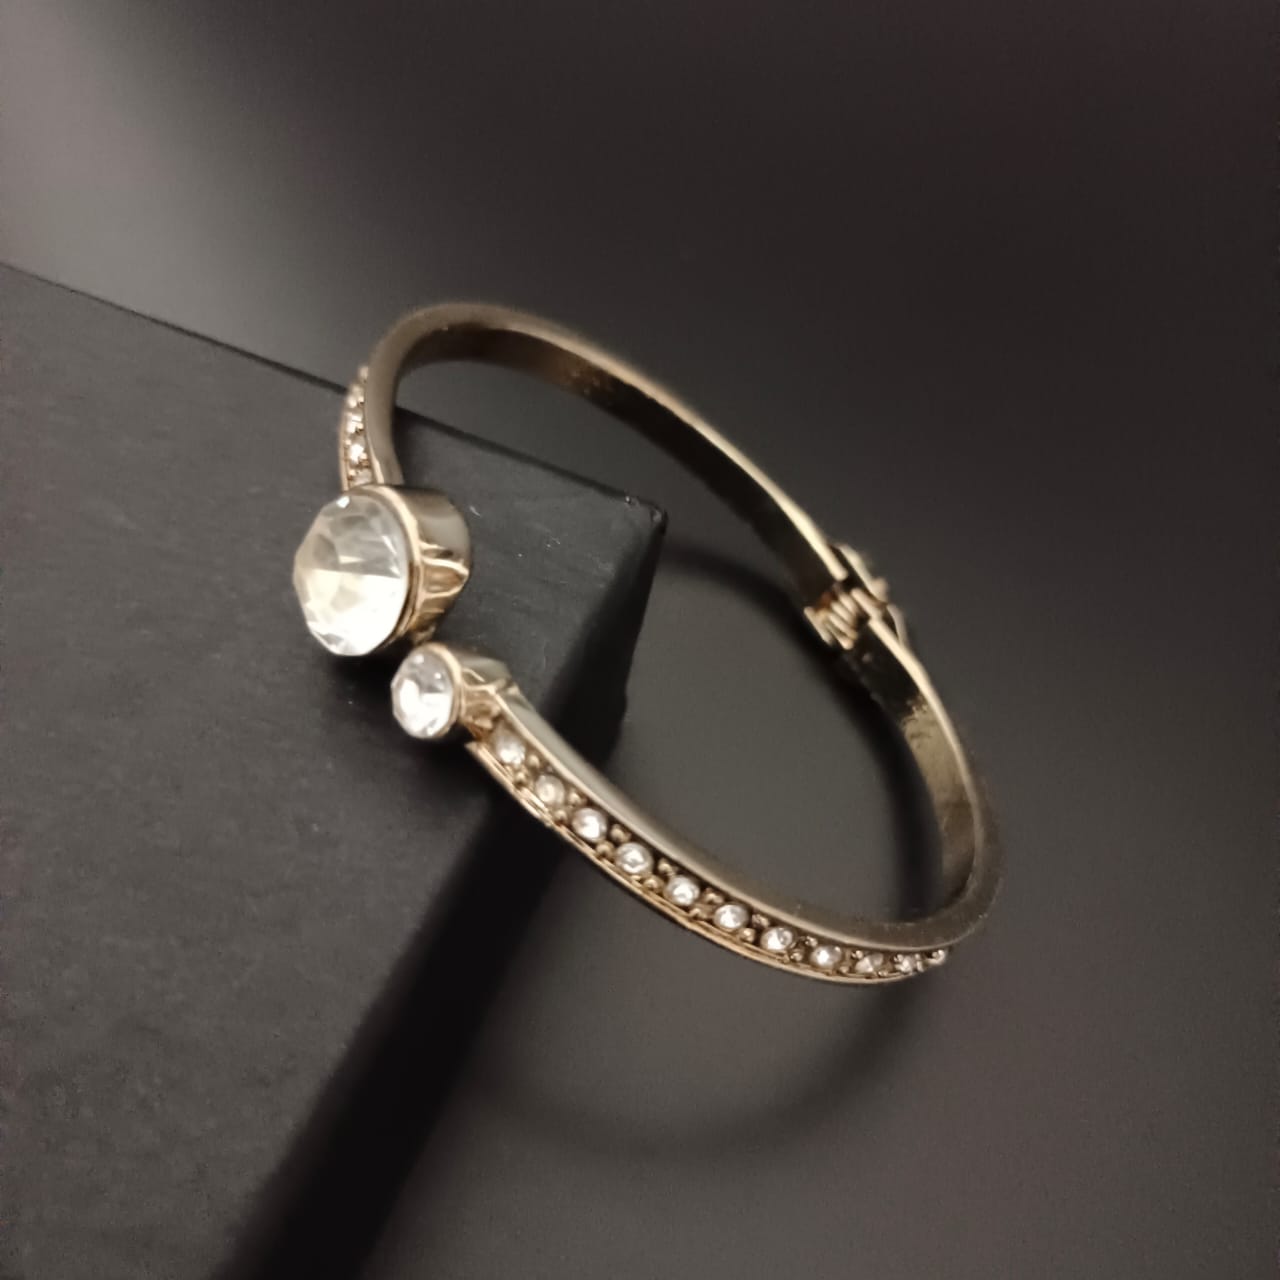 New Golden Diamond  Kada Bracelet For Women and Girl